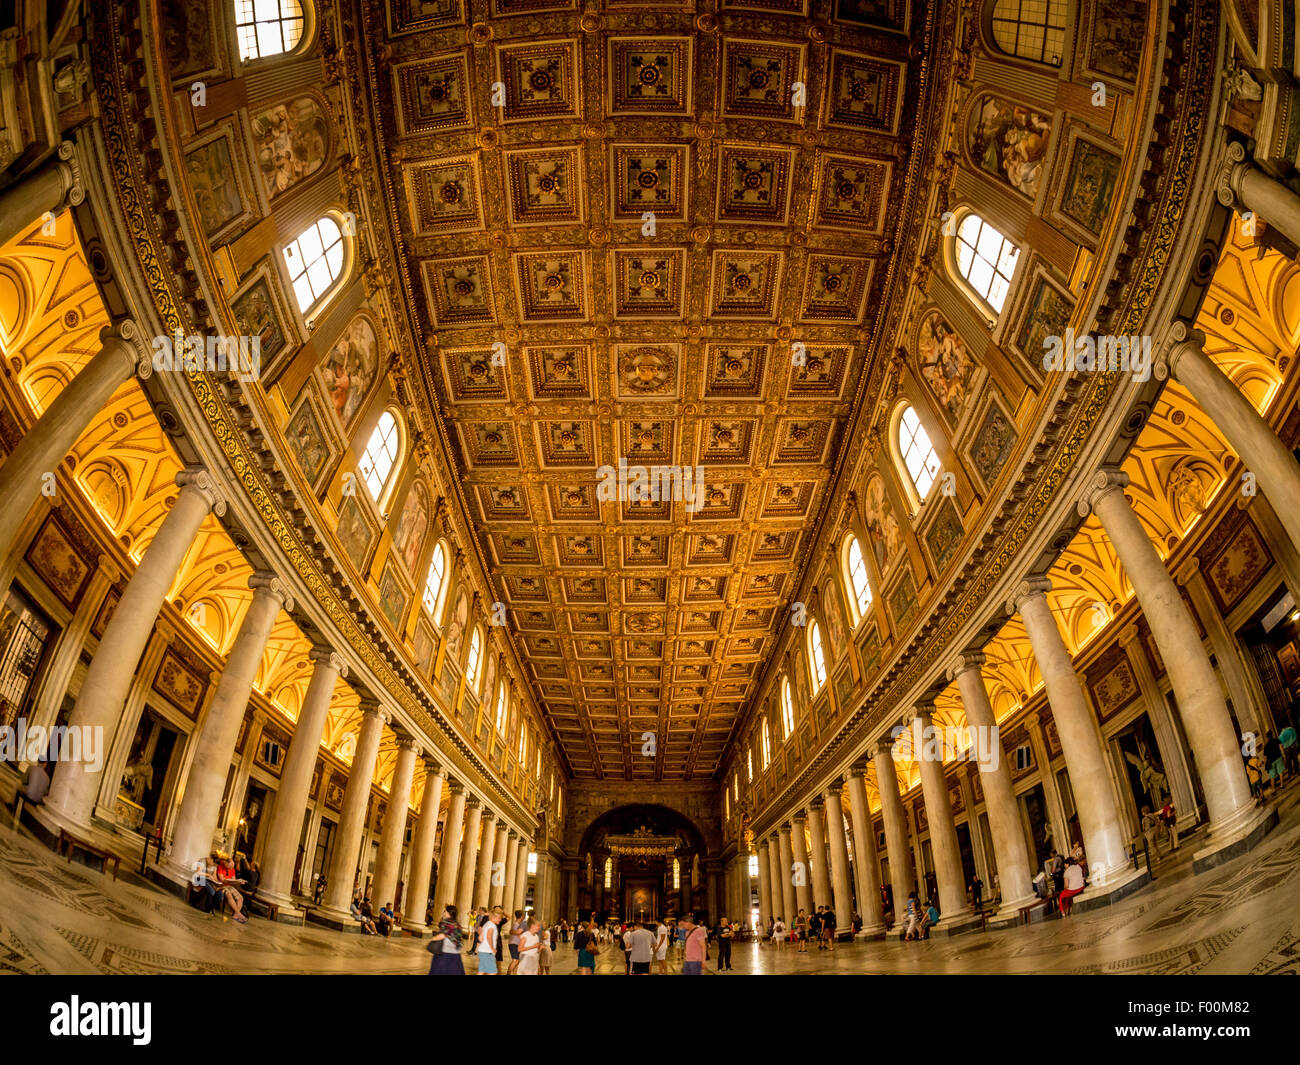 Lente ojo de pez shot de nave ornamentado suelo y techo de la Basilica di Santa Maria Maggiore. Roma, Italia. Foto de stock